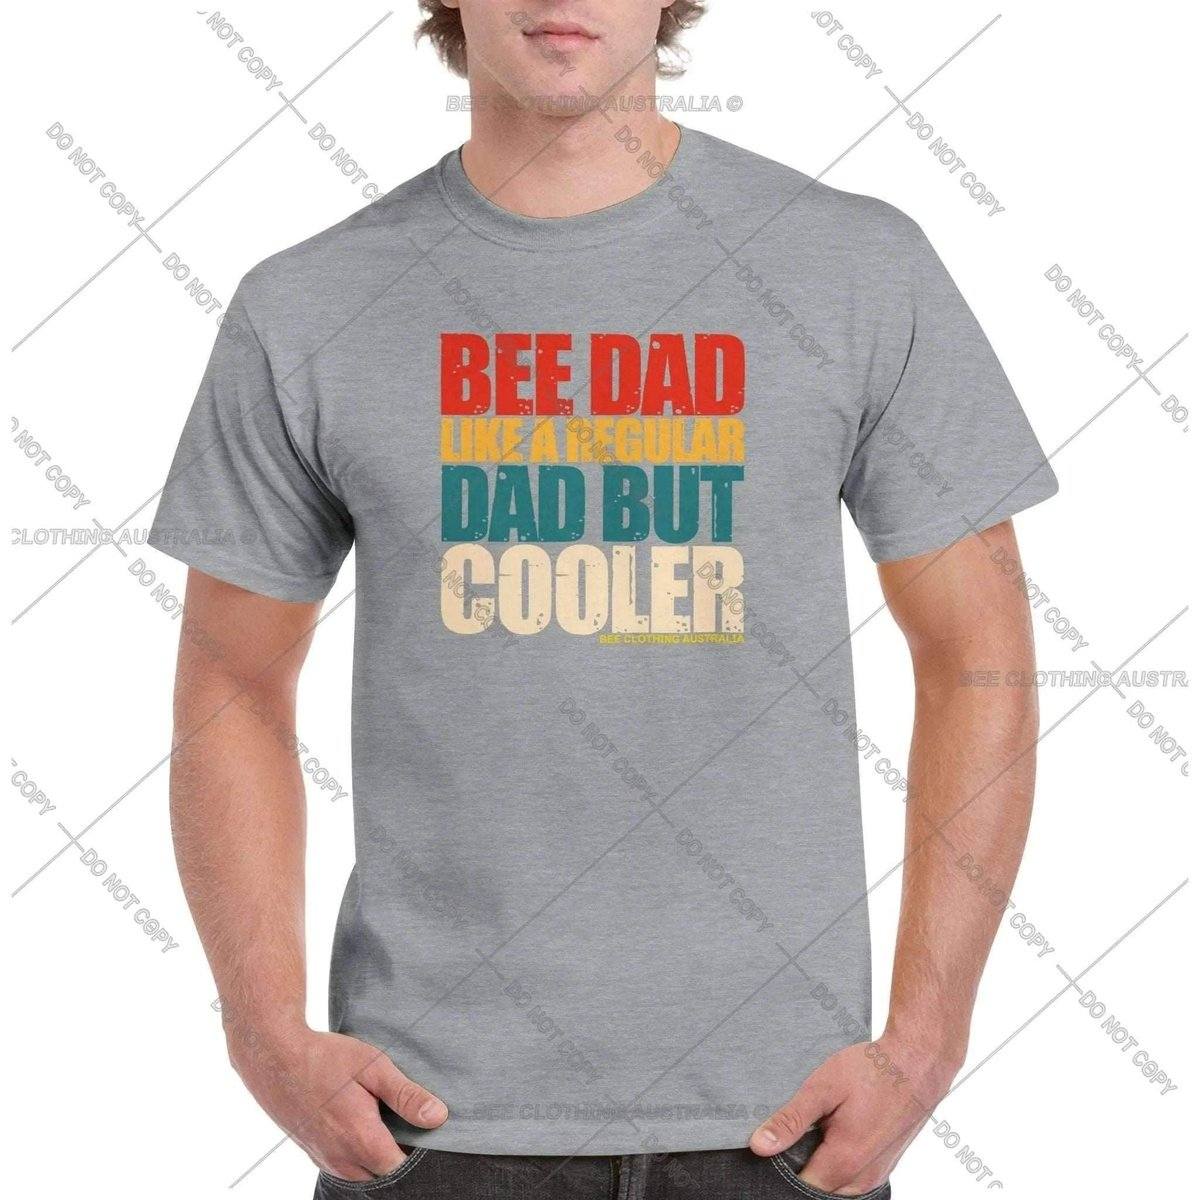 Bee Dad But Cooler VintageT-Shirt Australia Online Color Sports Grey / S